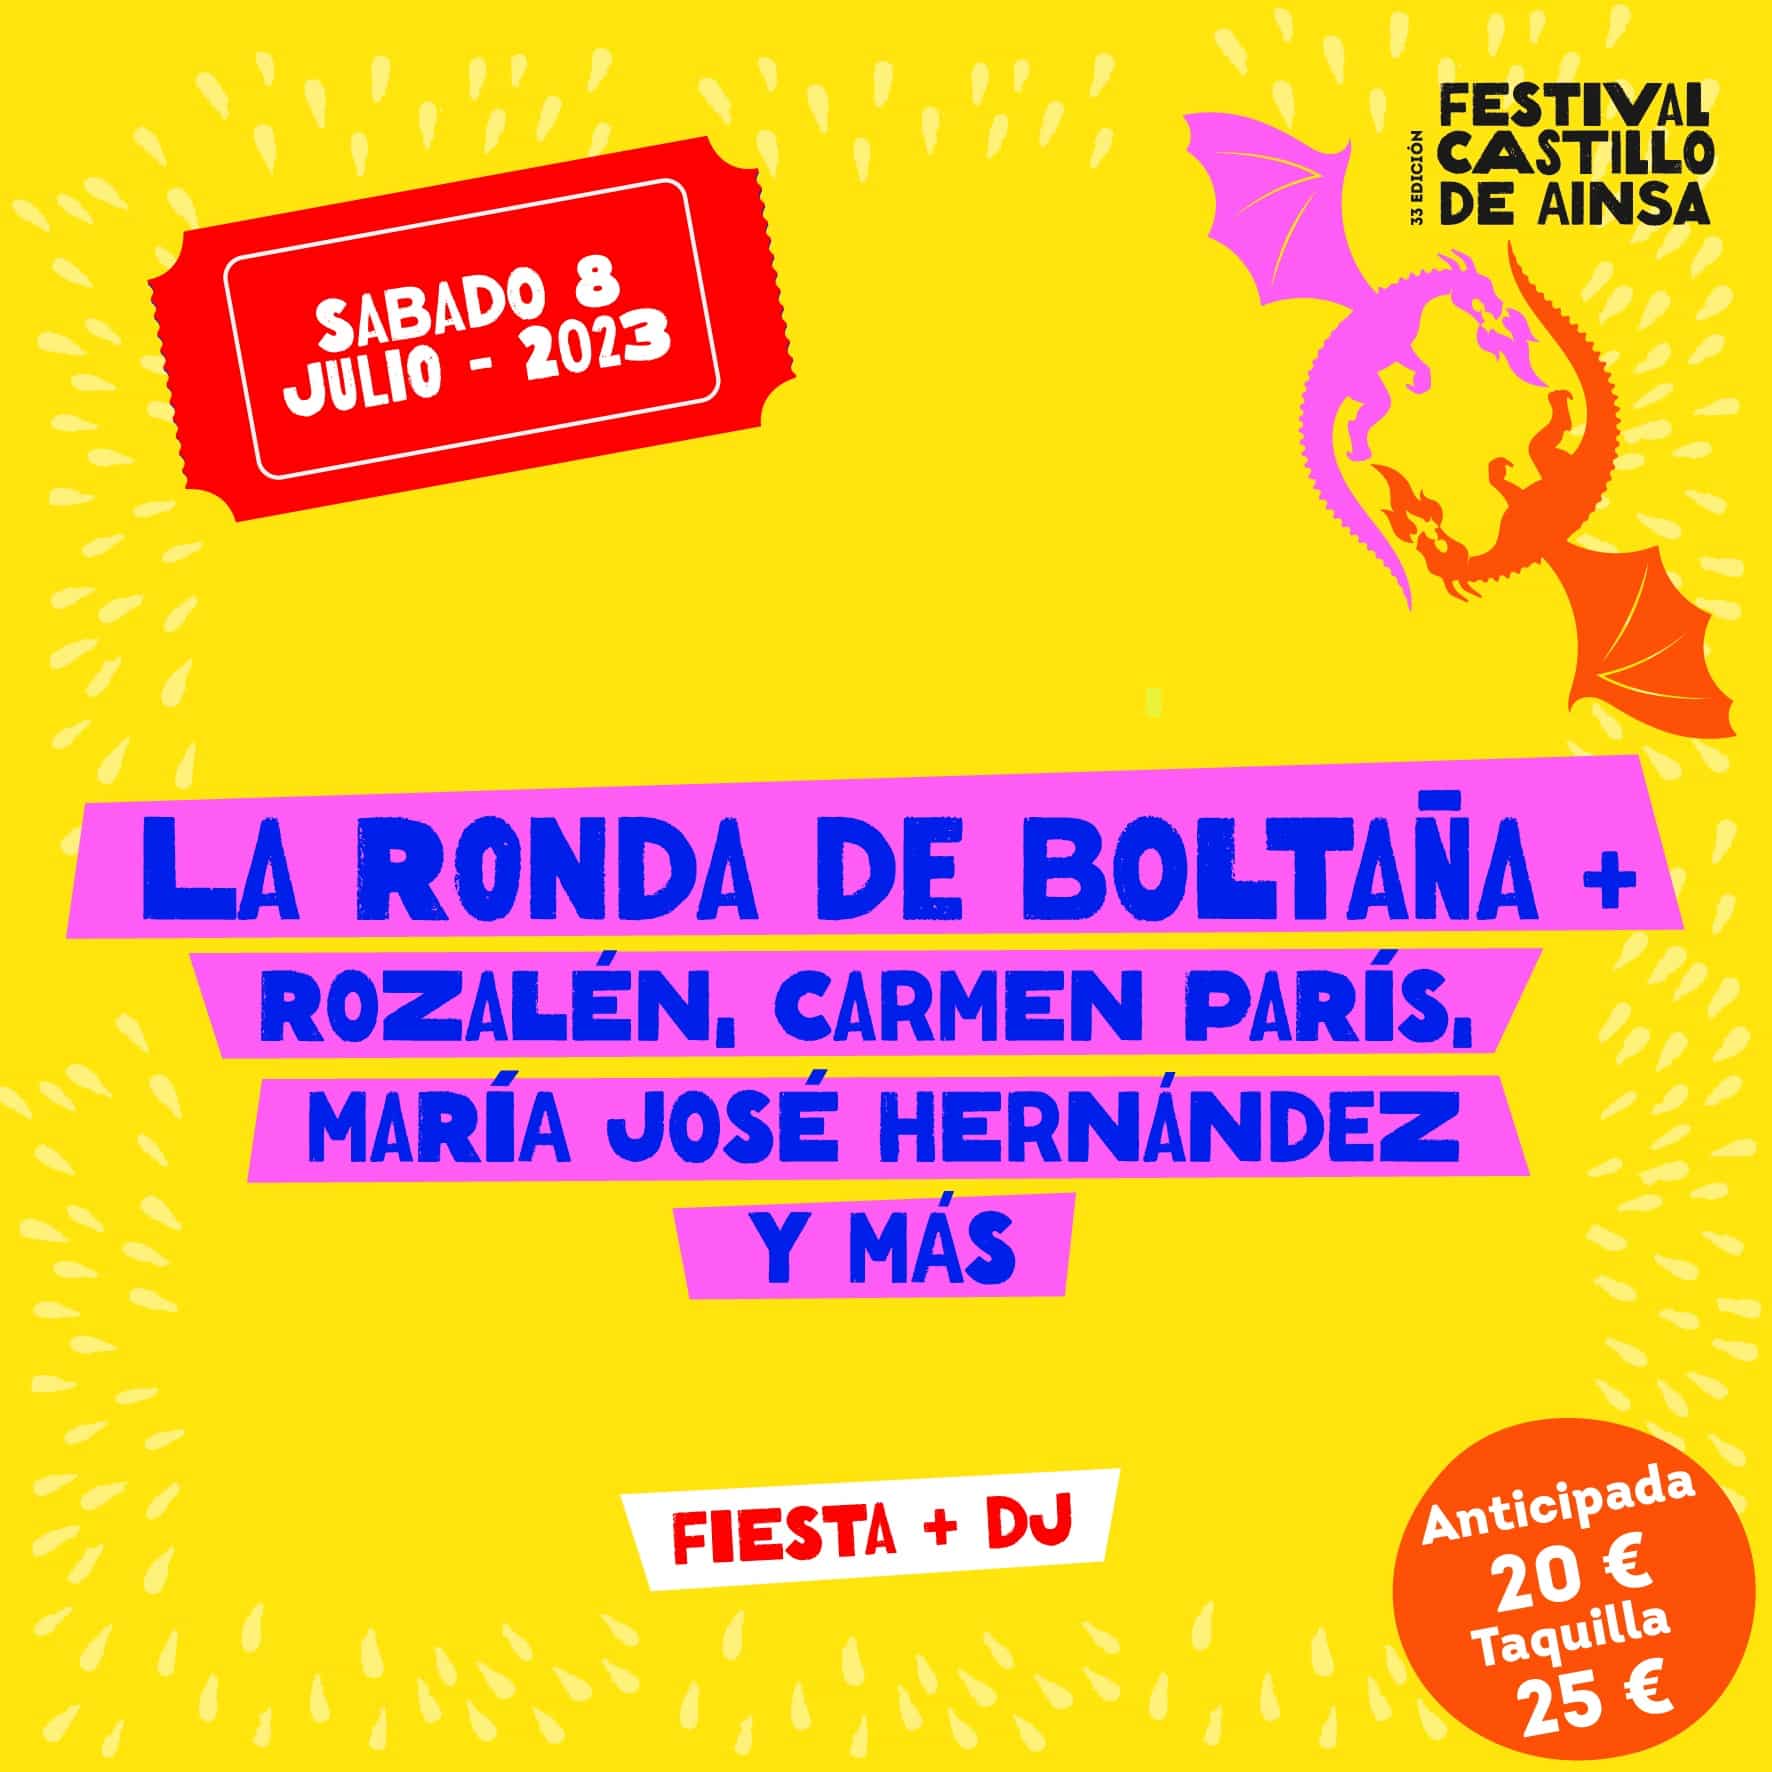 BONO FESTIVAL CASTILLO DE AINSA 2023